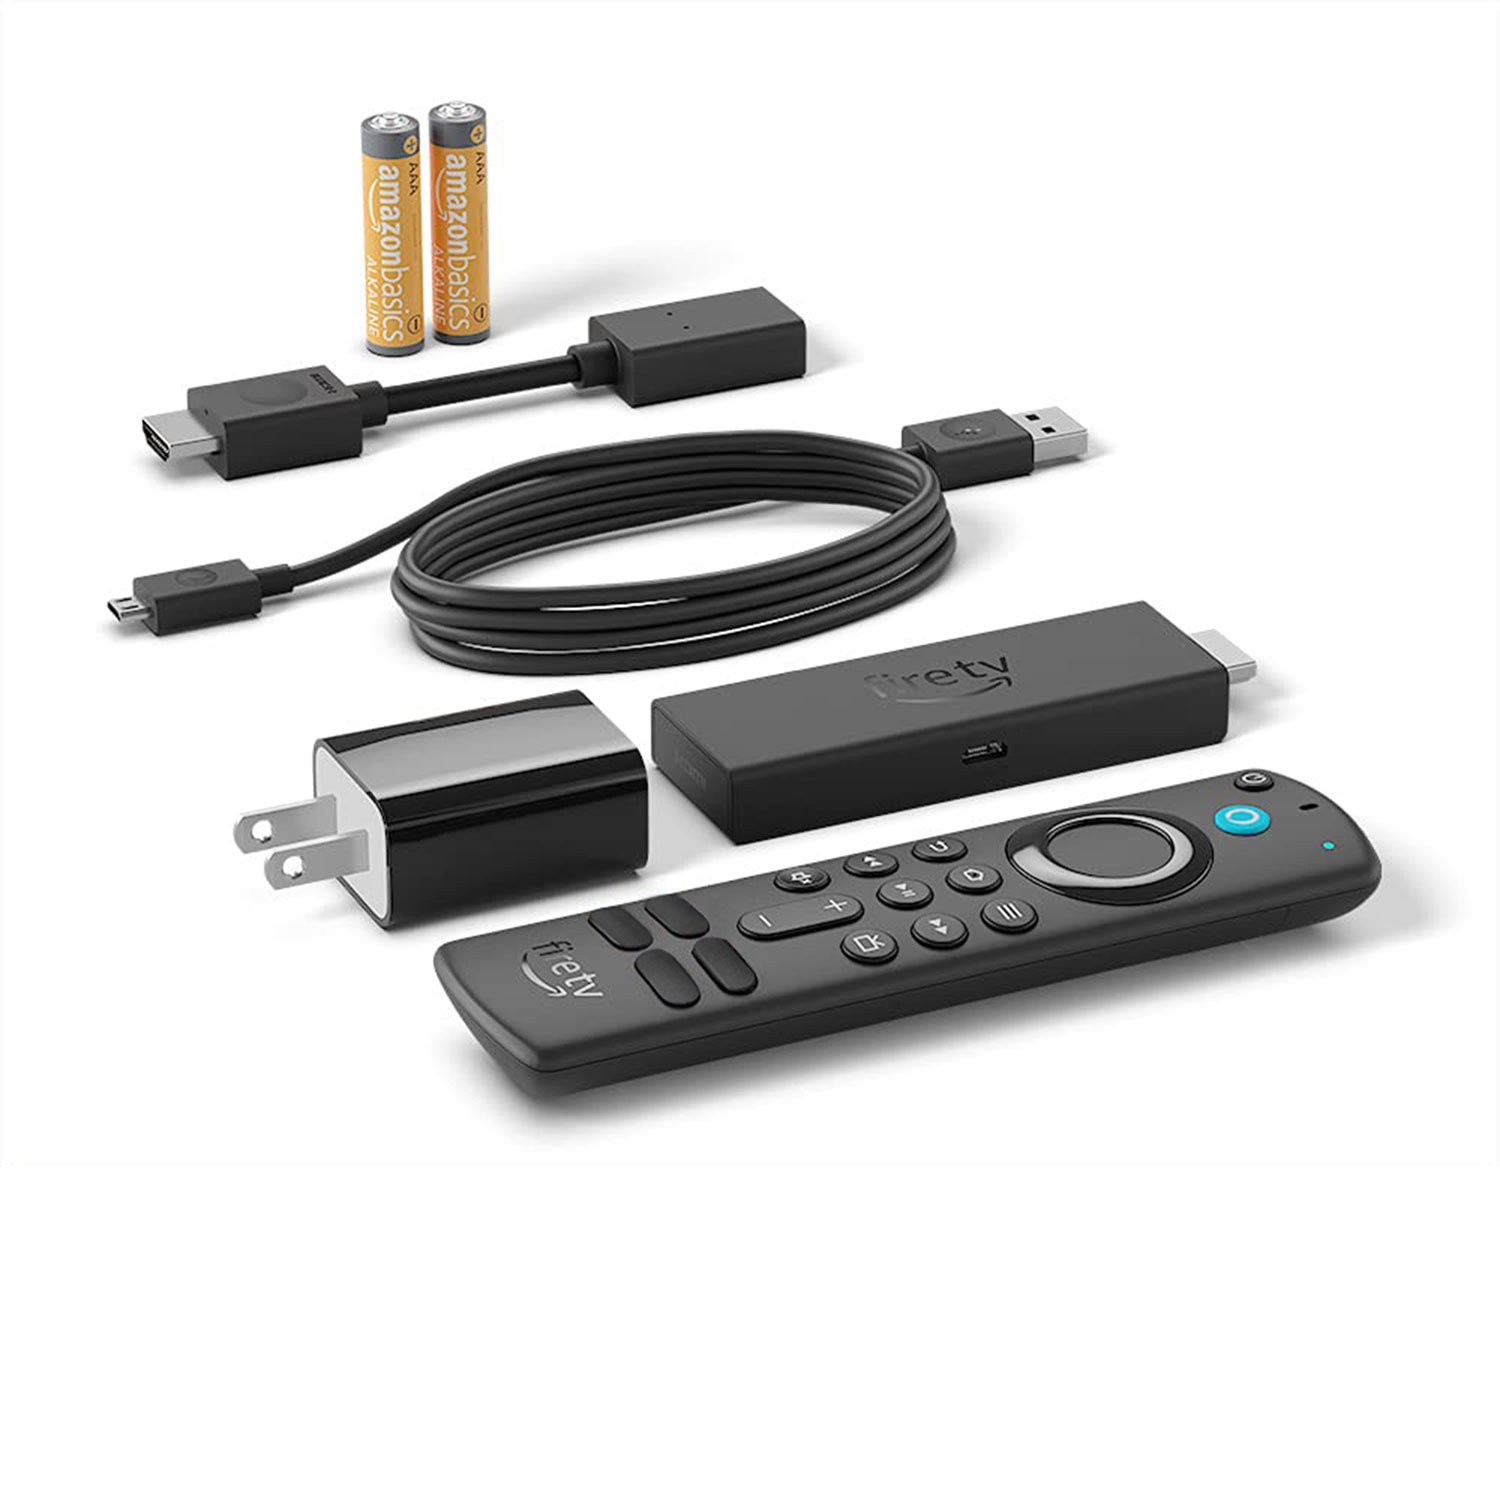 Clé  Fire TV Stick - télécommande vocale Alexa - 6 mois de garantie  en vente au meilleur prix